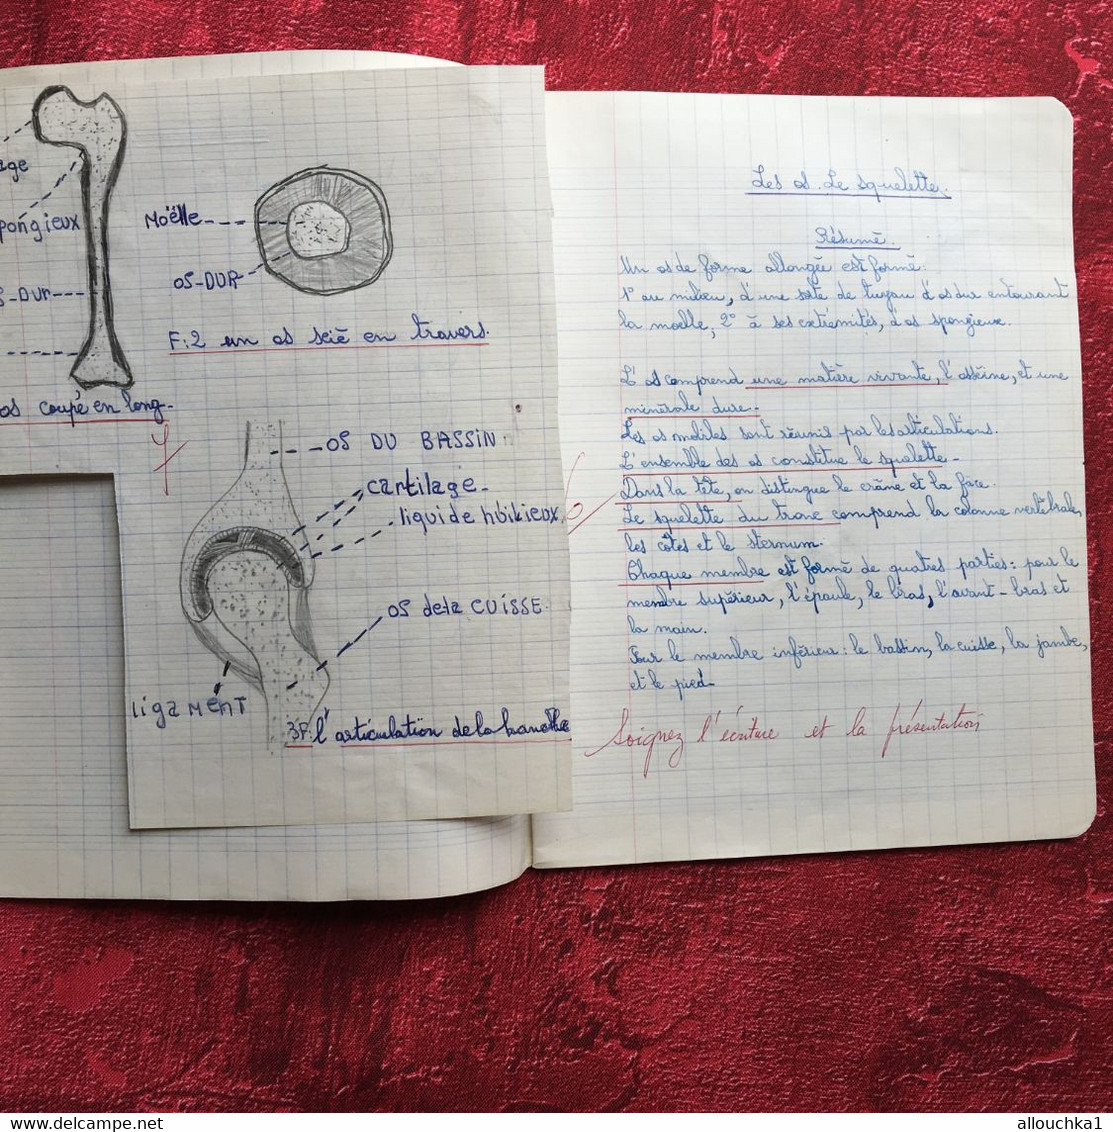 Cahier Ecole communale de La Loubière Marseille 5é-Cahier d'écolier Sciences naturelles Texte écriture au porte plume